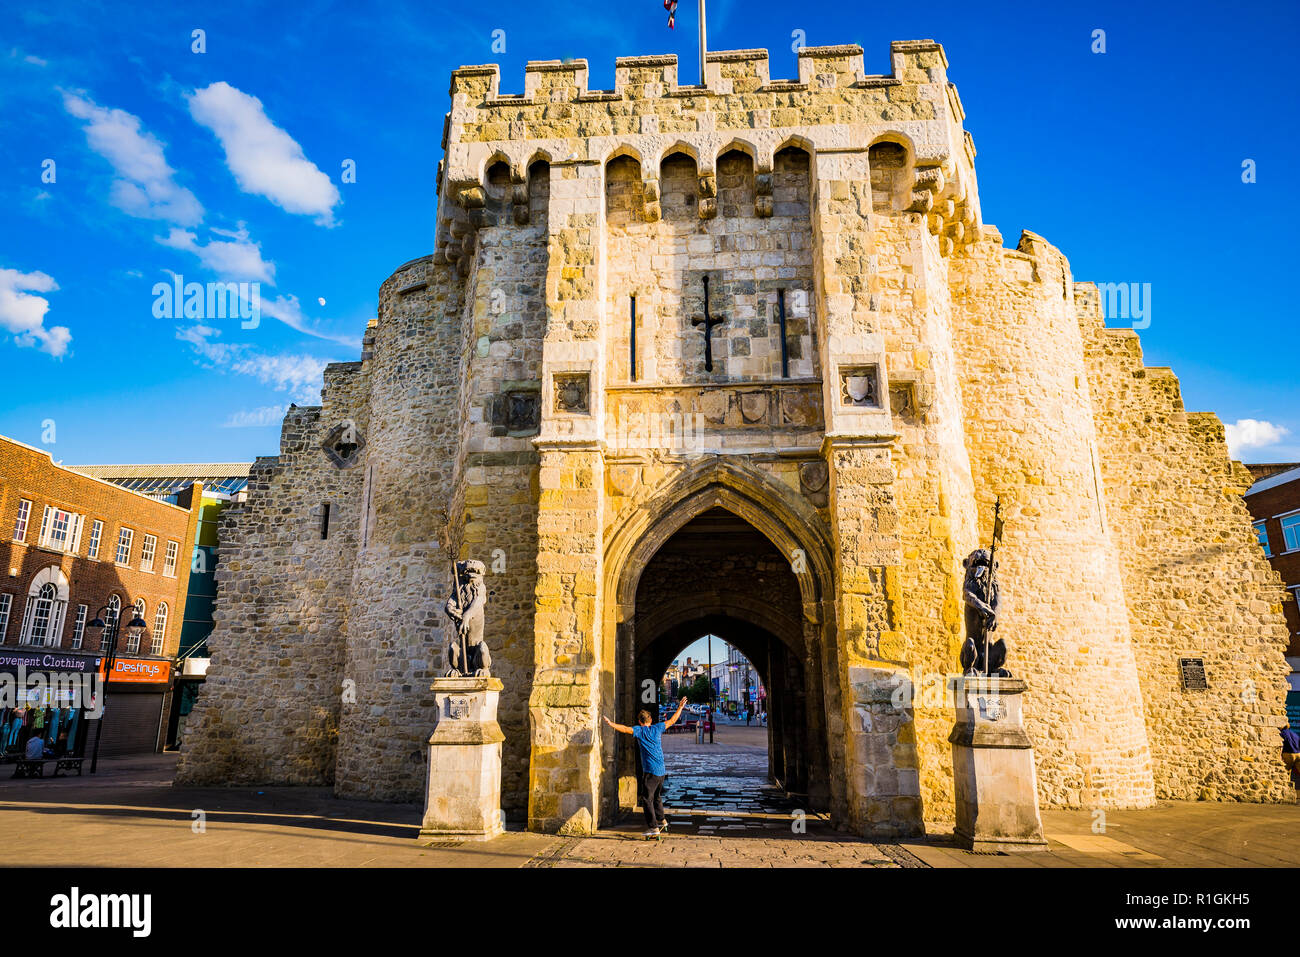 Le Bargate est guérite médiévale dans le centre-ville de Southampton. Côté nord. Southampton, Hampshire, Angleterre, Royaume-Uni, UK, Europe Banque D'Images